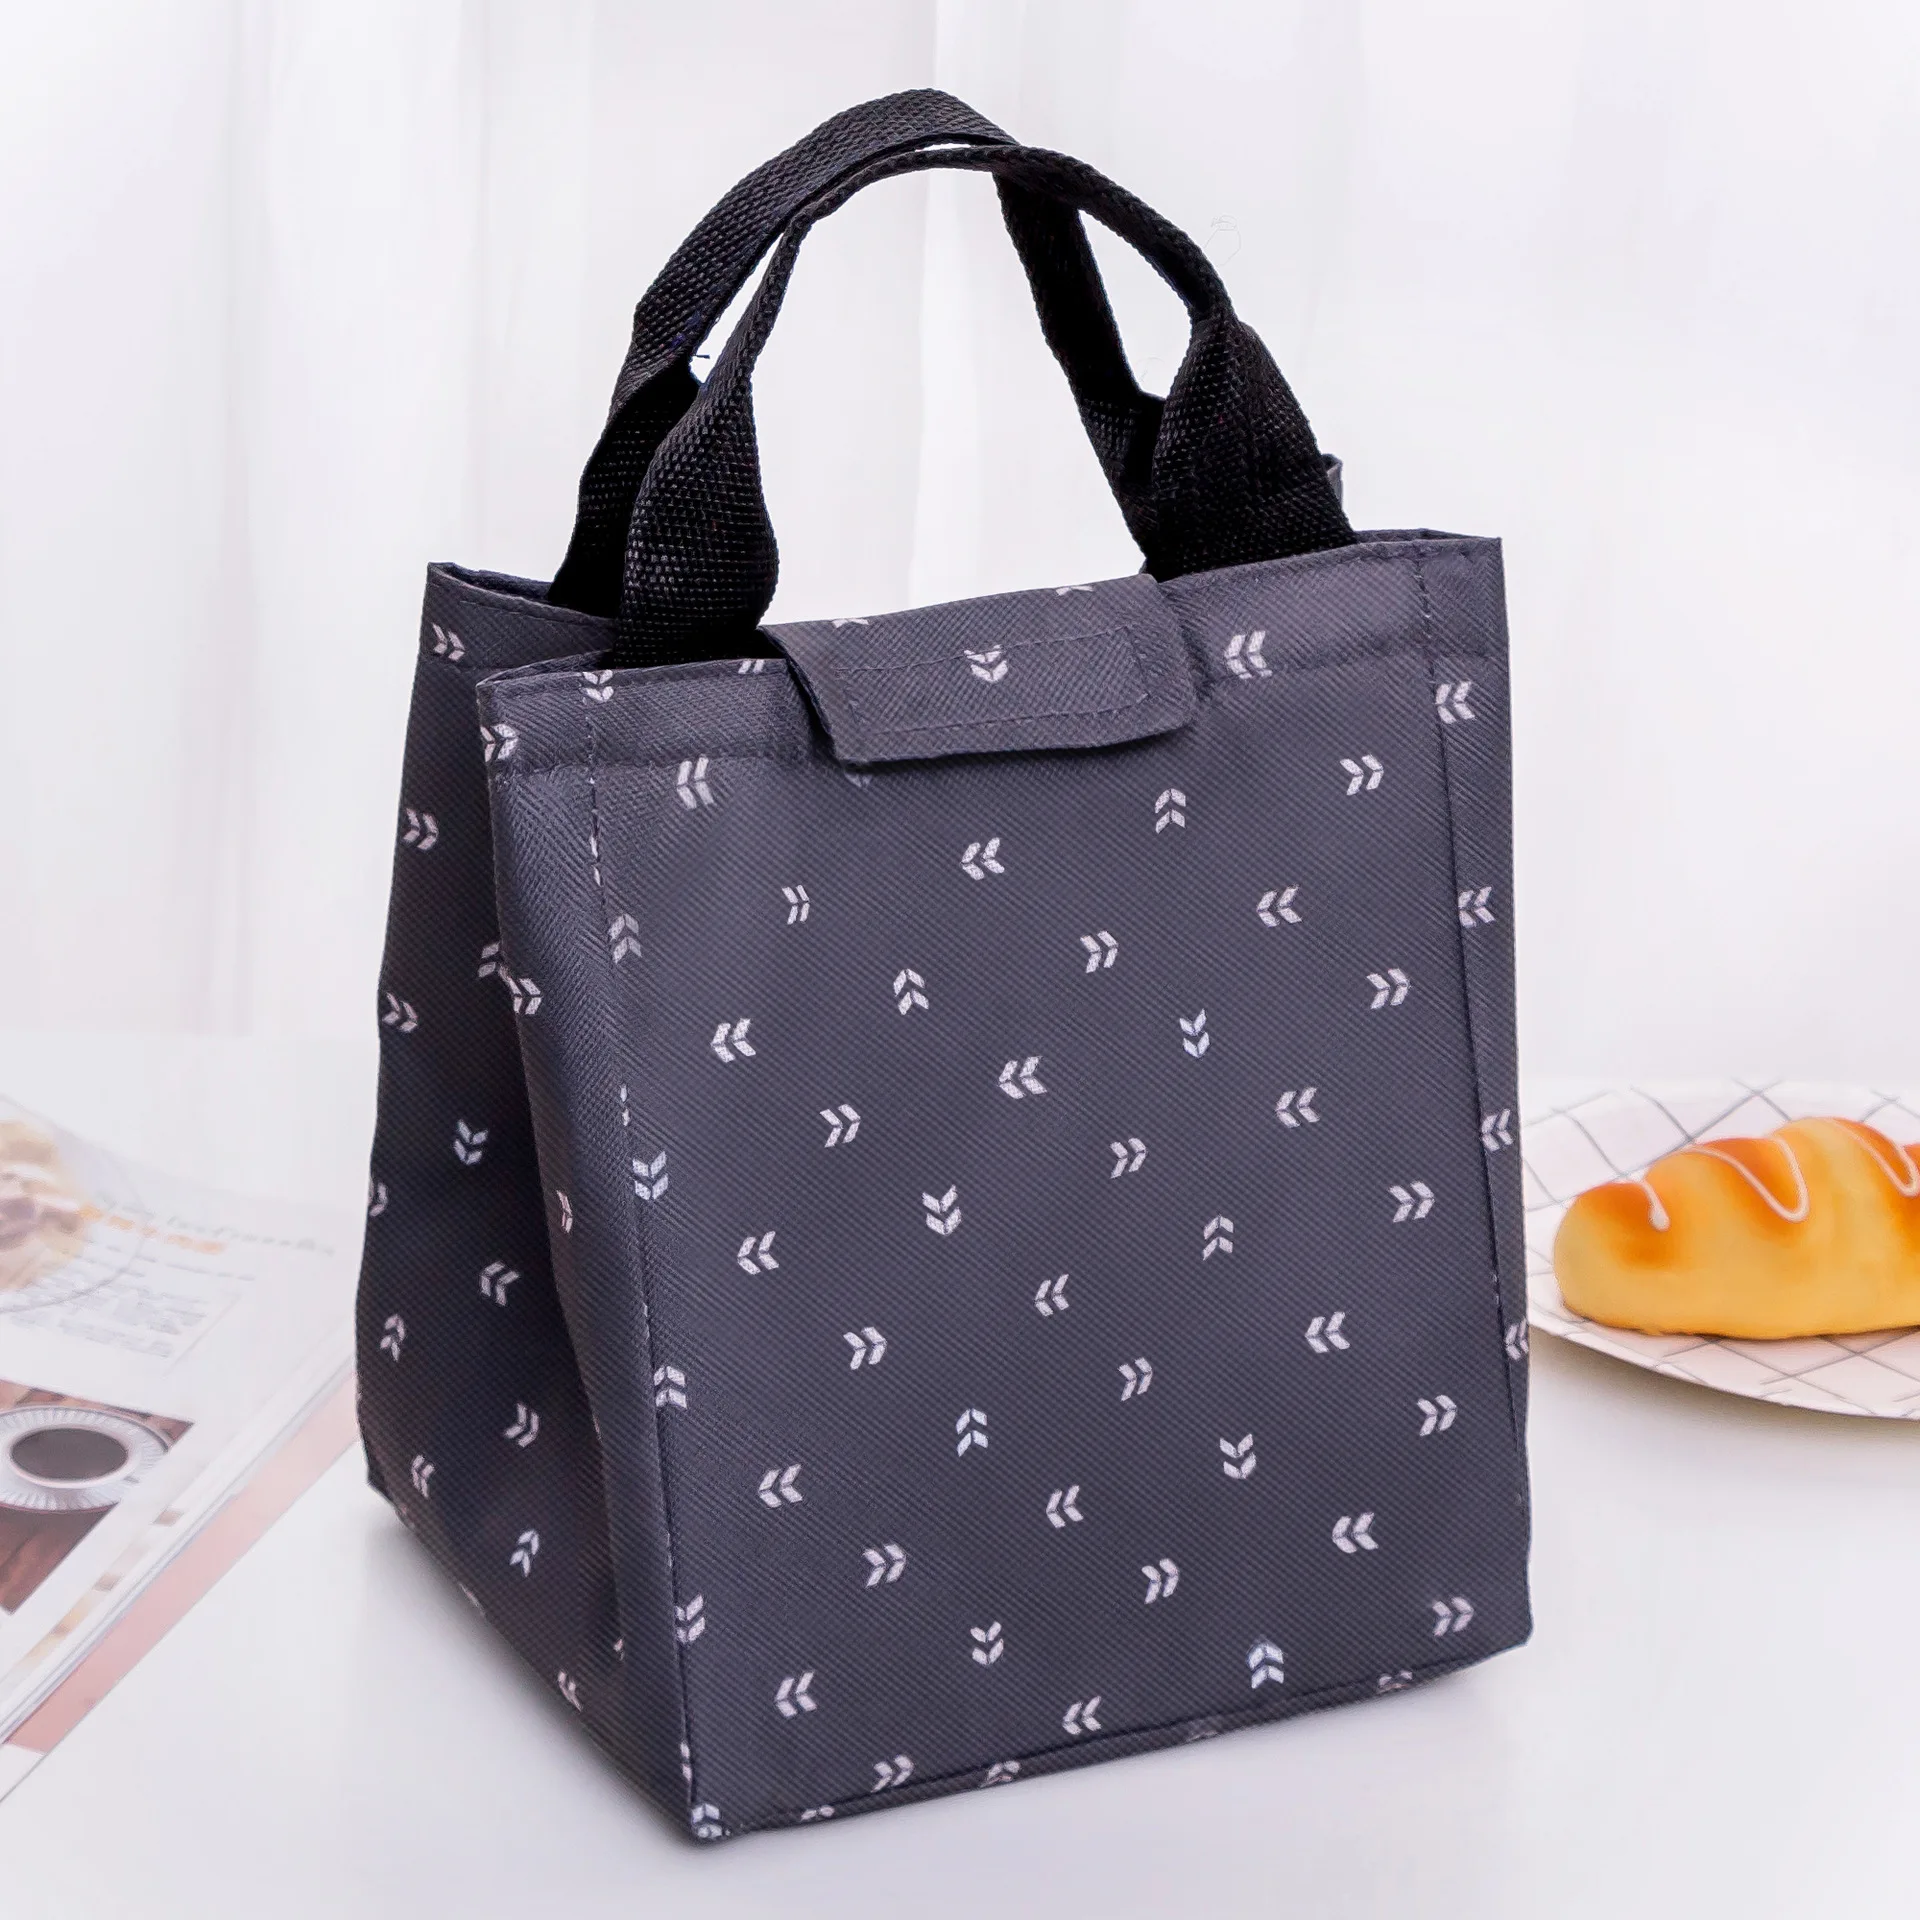 Теплоизоляционная сумка для обеда, свежая сумка-холодильник для еды, ткань Оксфорд, для пикника, для путешествий, сумка для обедов, Bolsa Termica - Цвет: Темно-серый